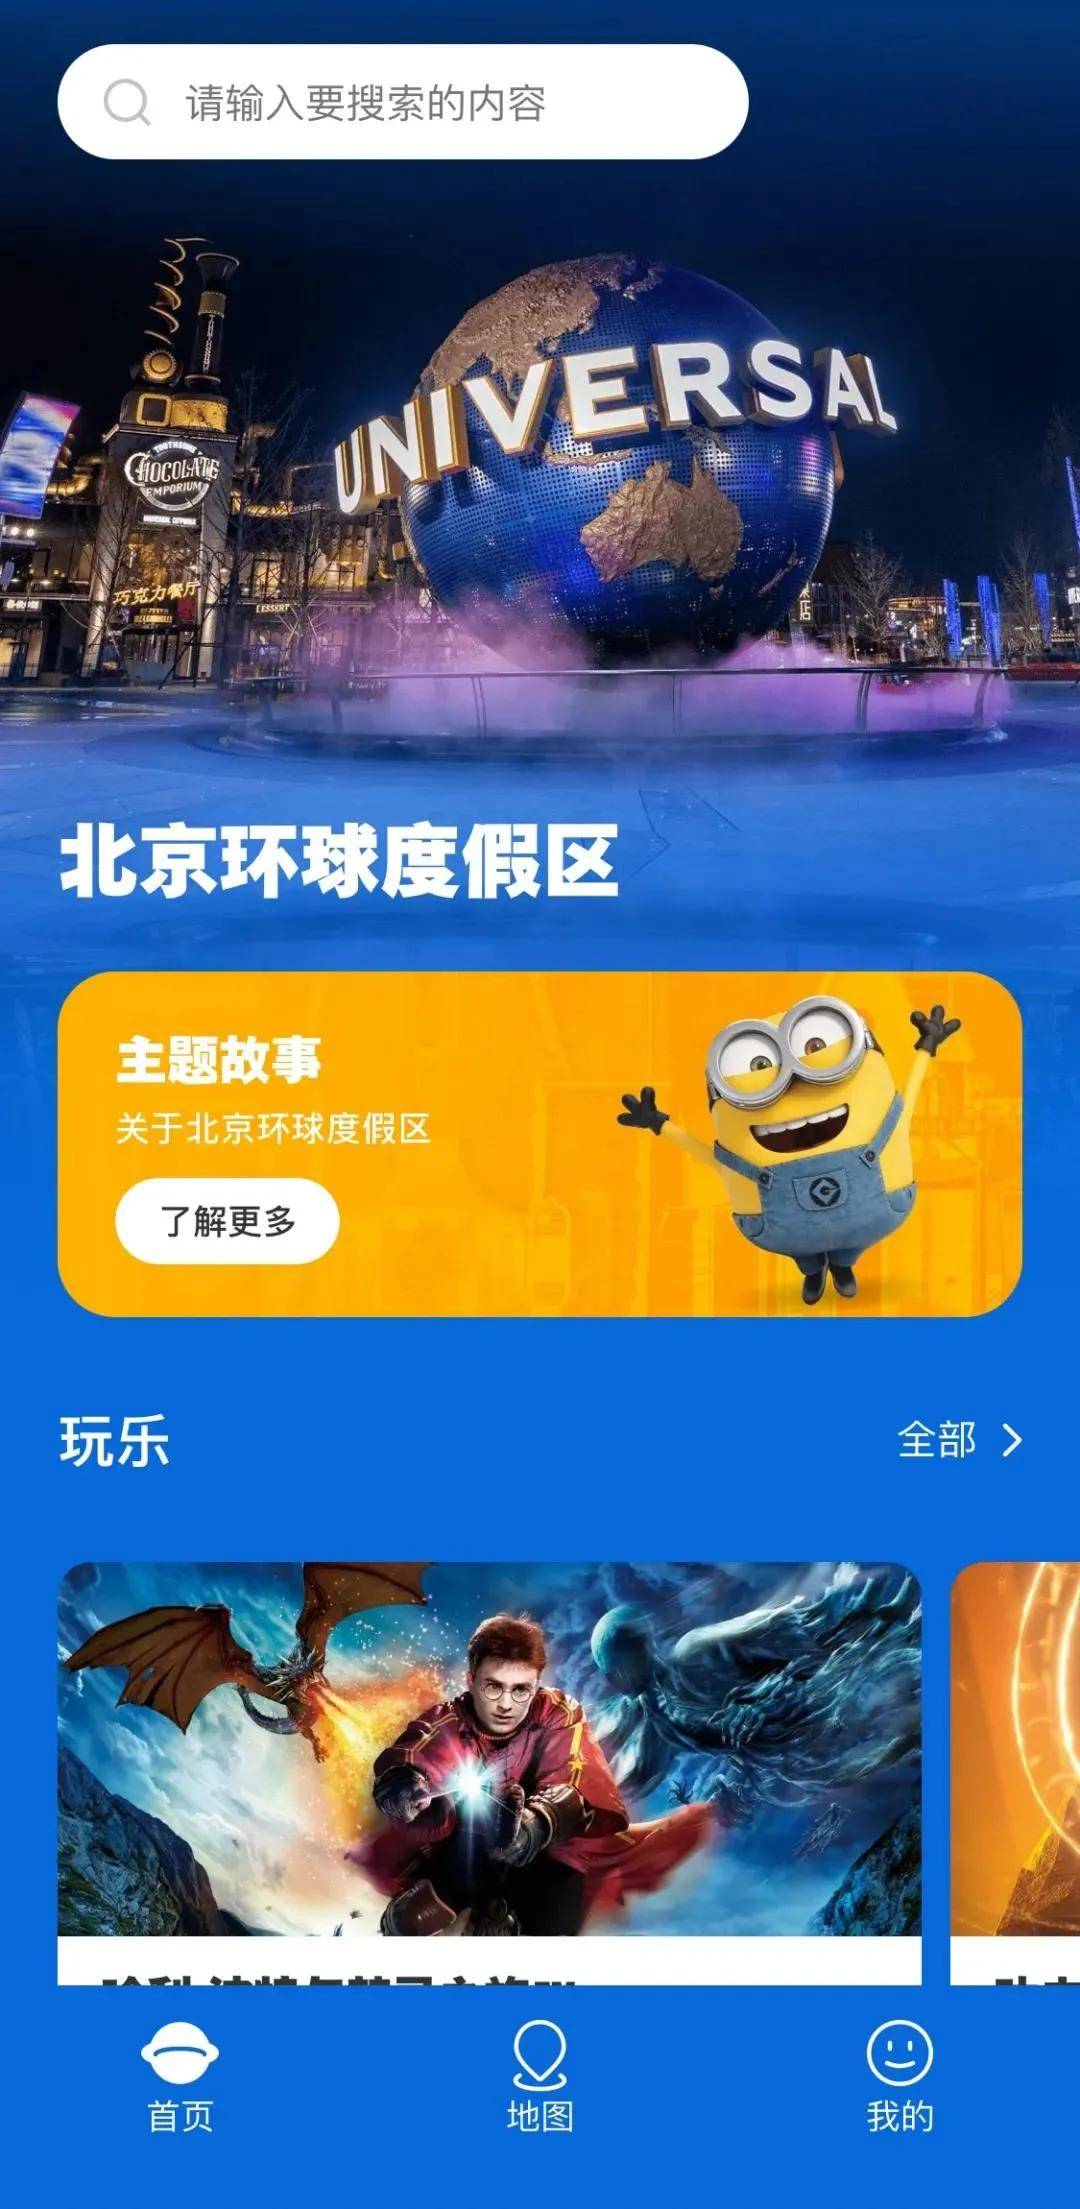 北京环球度假区游玩地图上线！超多游乐项目和演出来啦